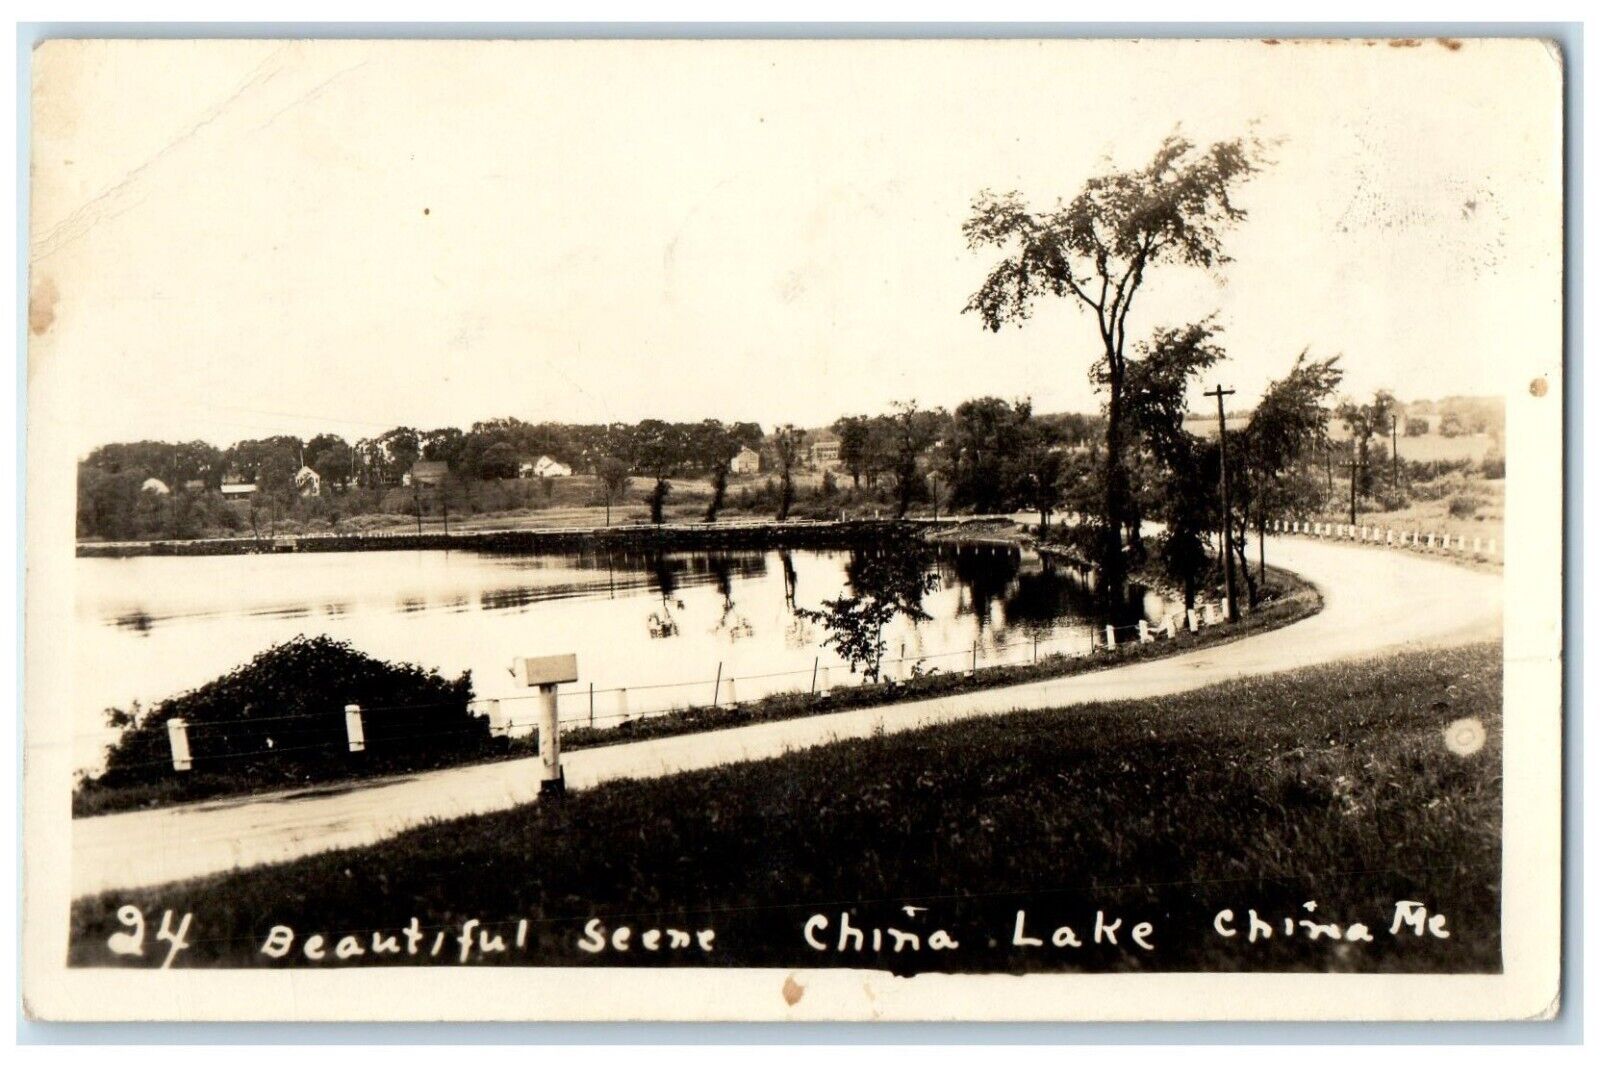 c1940's Beautiful Scene China Lake China Maine ME RPPC Photo Vintage Postcard